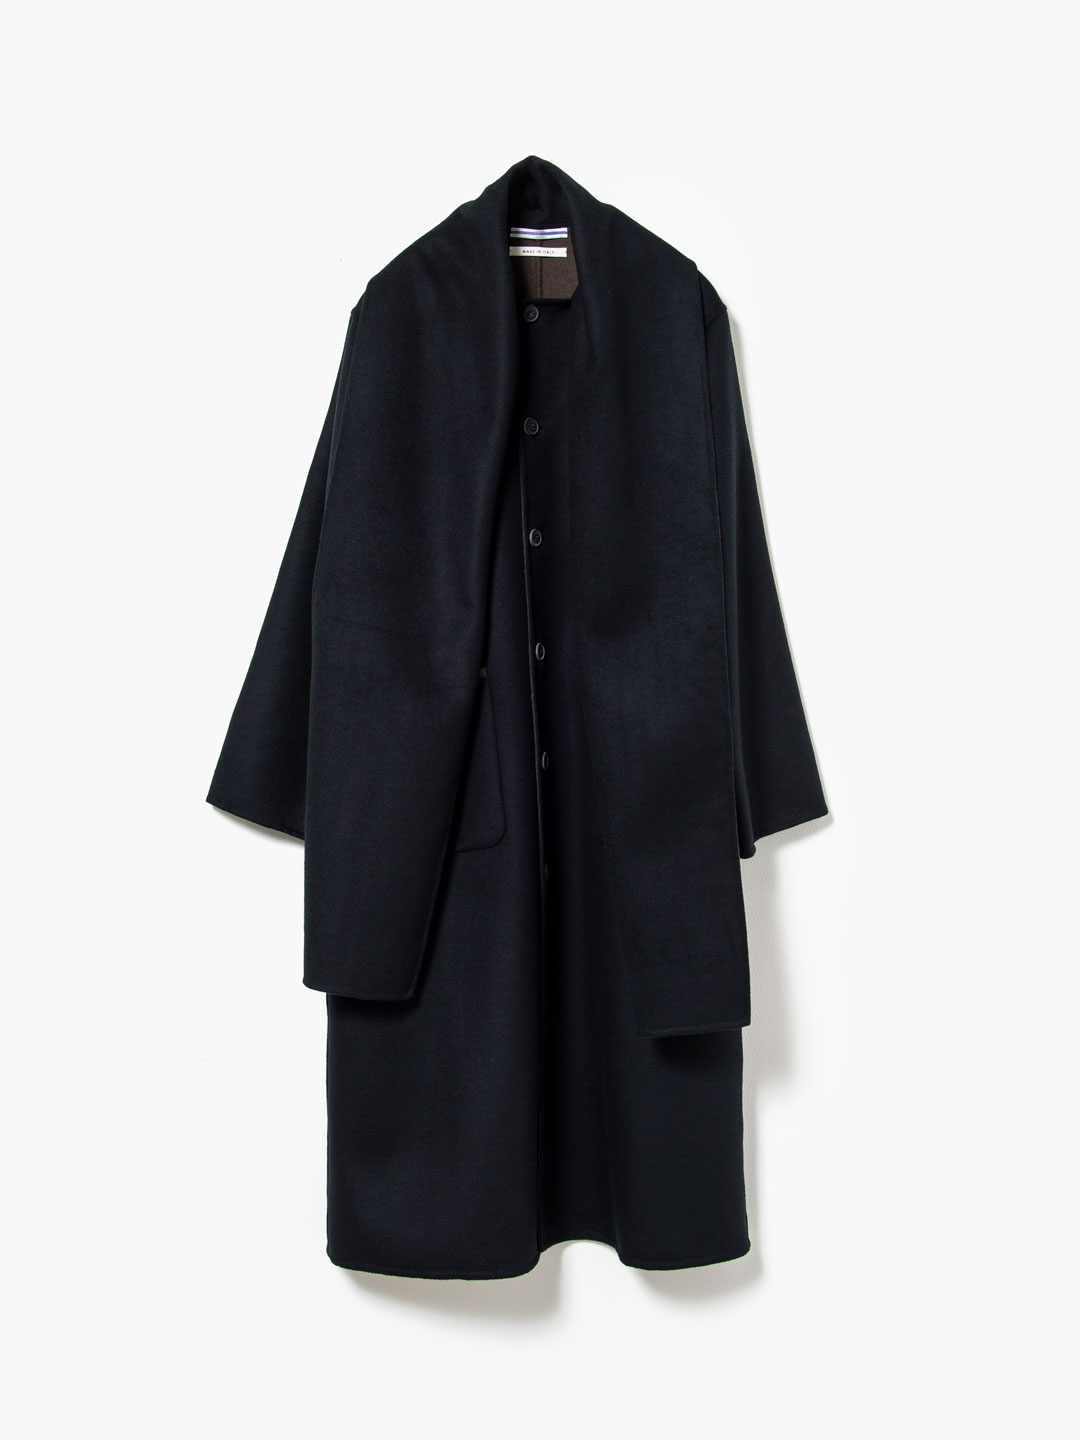 【予約販売】Reversible Overcoat with Scarf - Black